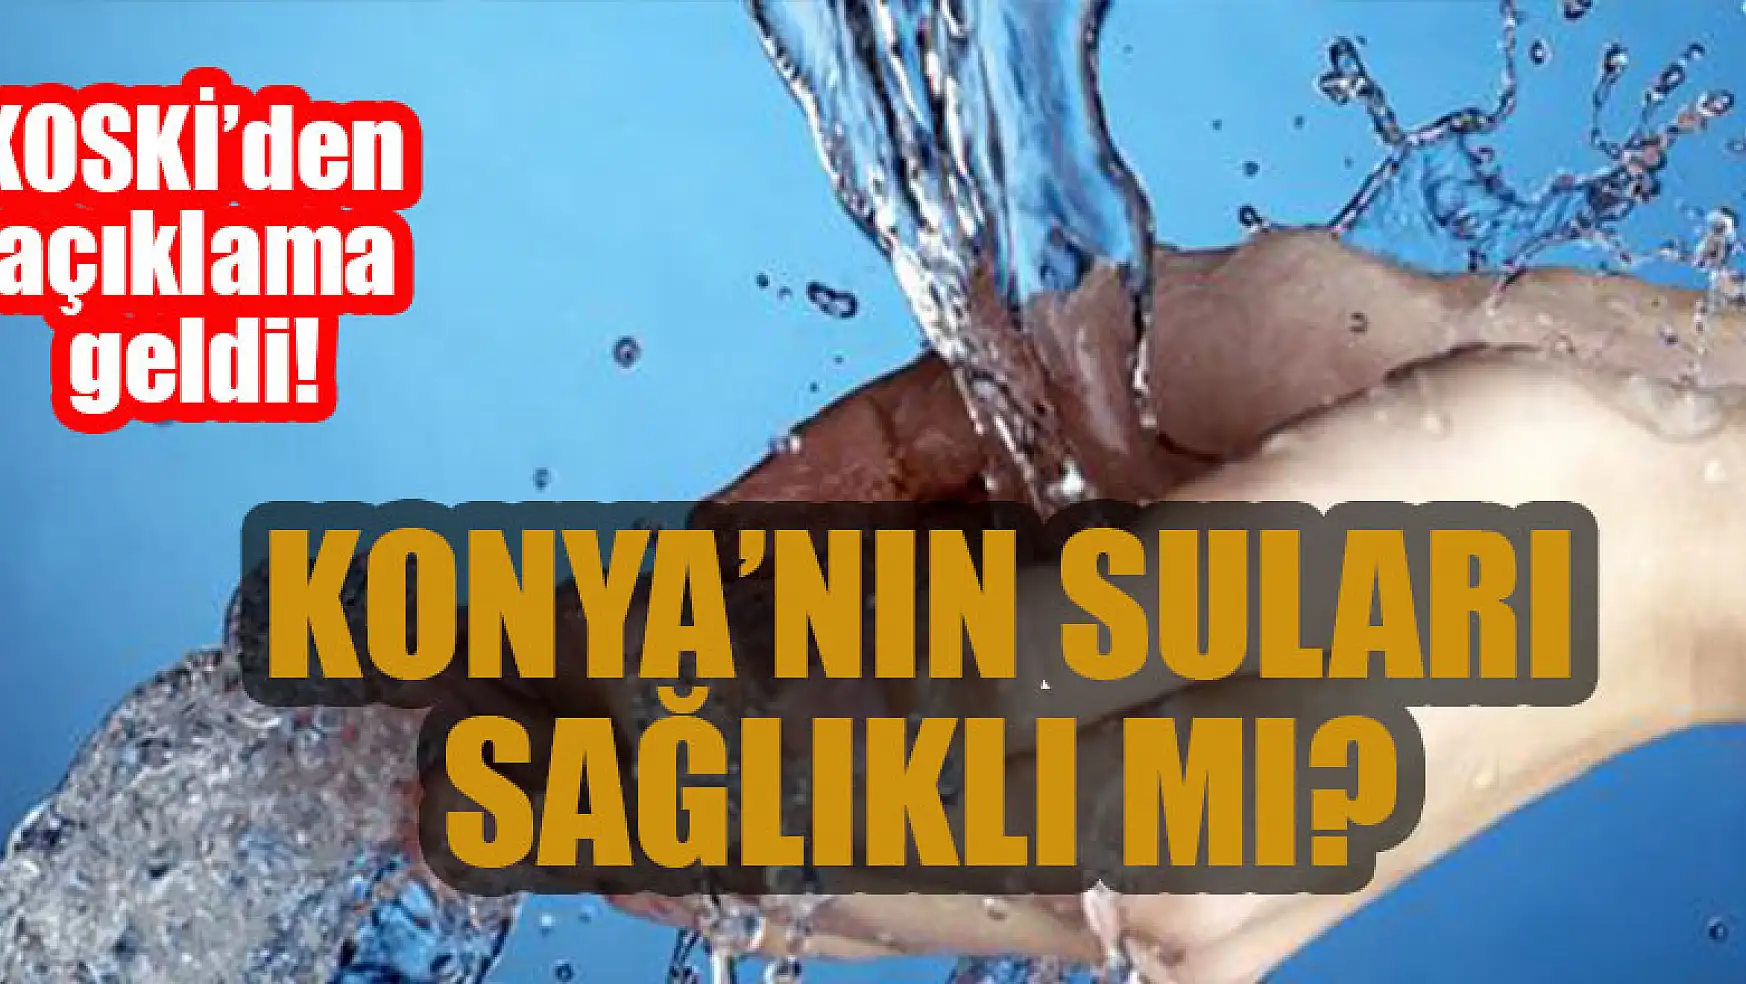 Konya'nın suları sağlıklı mı?  KOSKİ'den açıklama geldi!